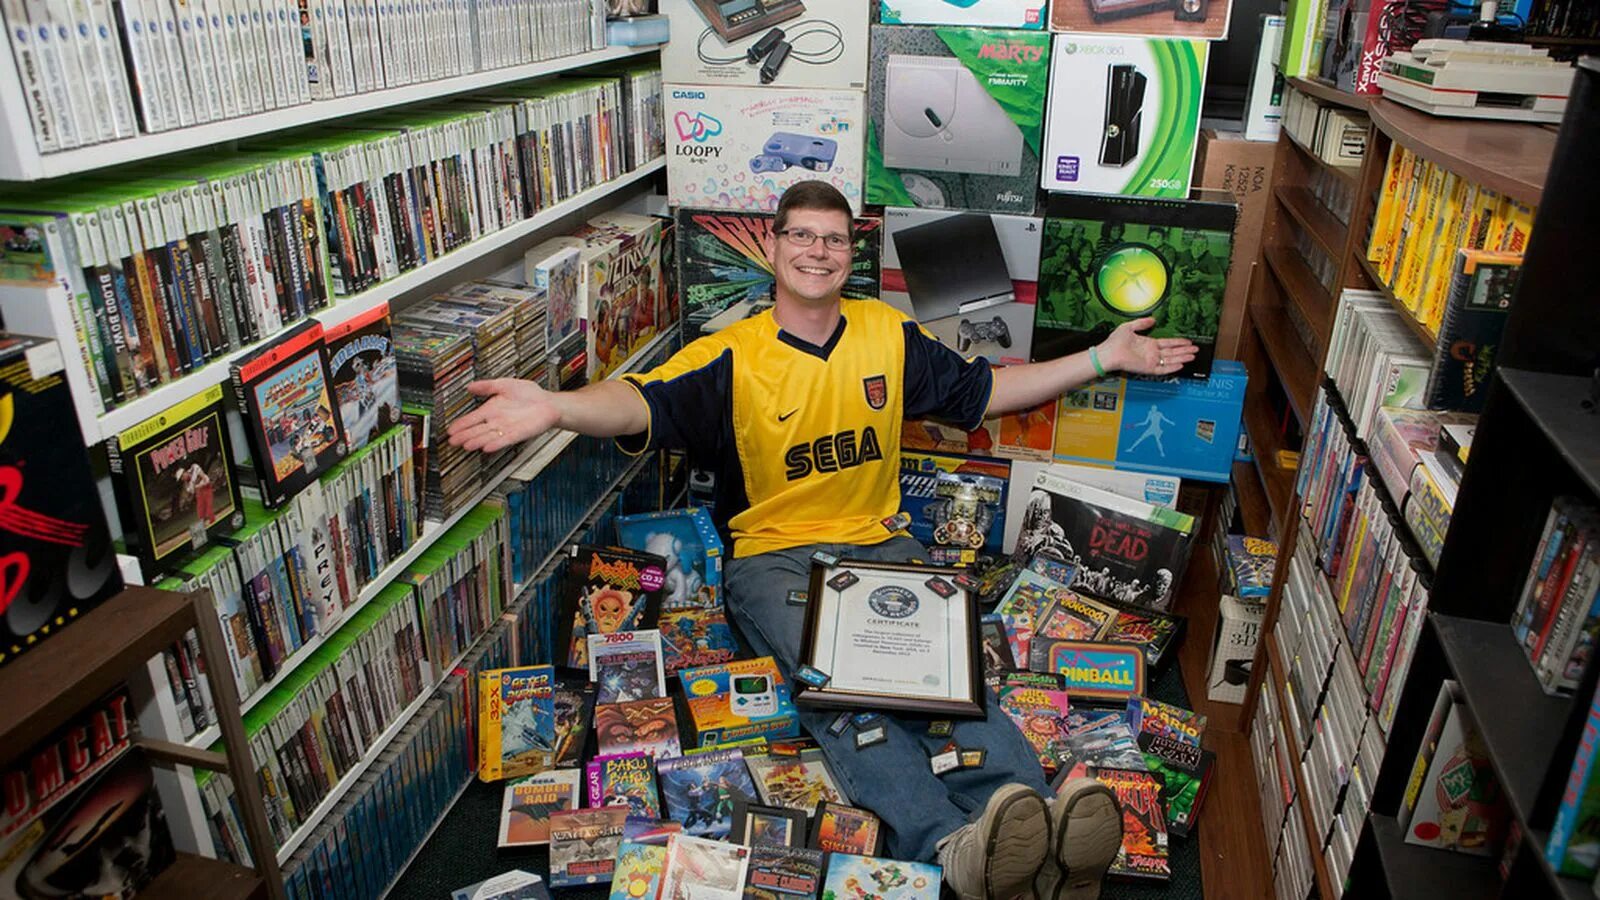 Неделя компьютерных игр. Самая большая коллекция игр. Коллекционер игровых приставок. Коллекционирование компьютерных игр. Самая большая коллекция видеоигр в мире.